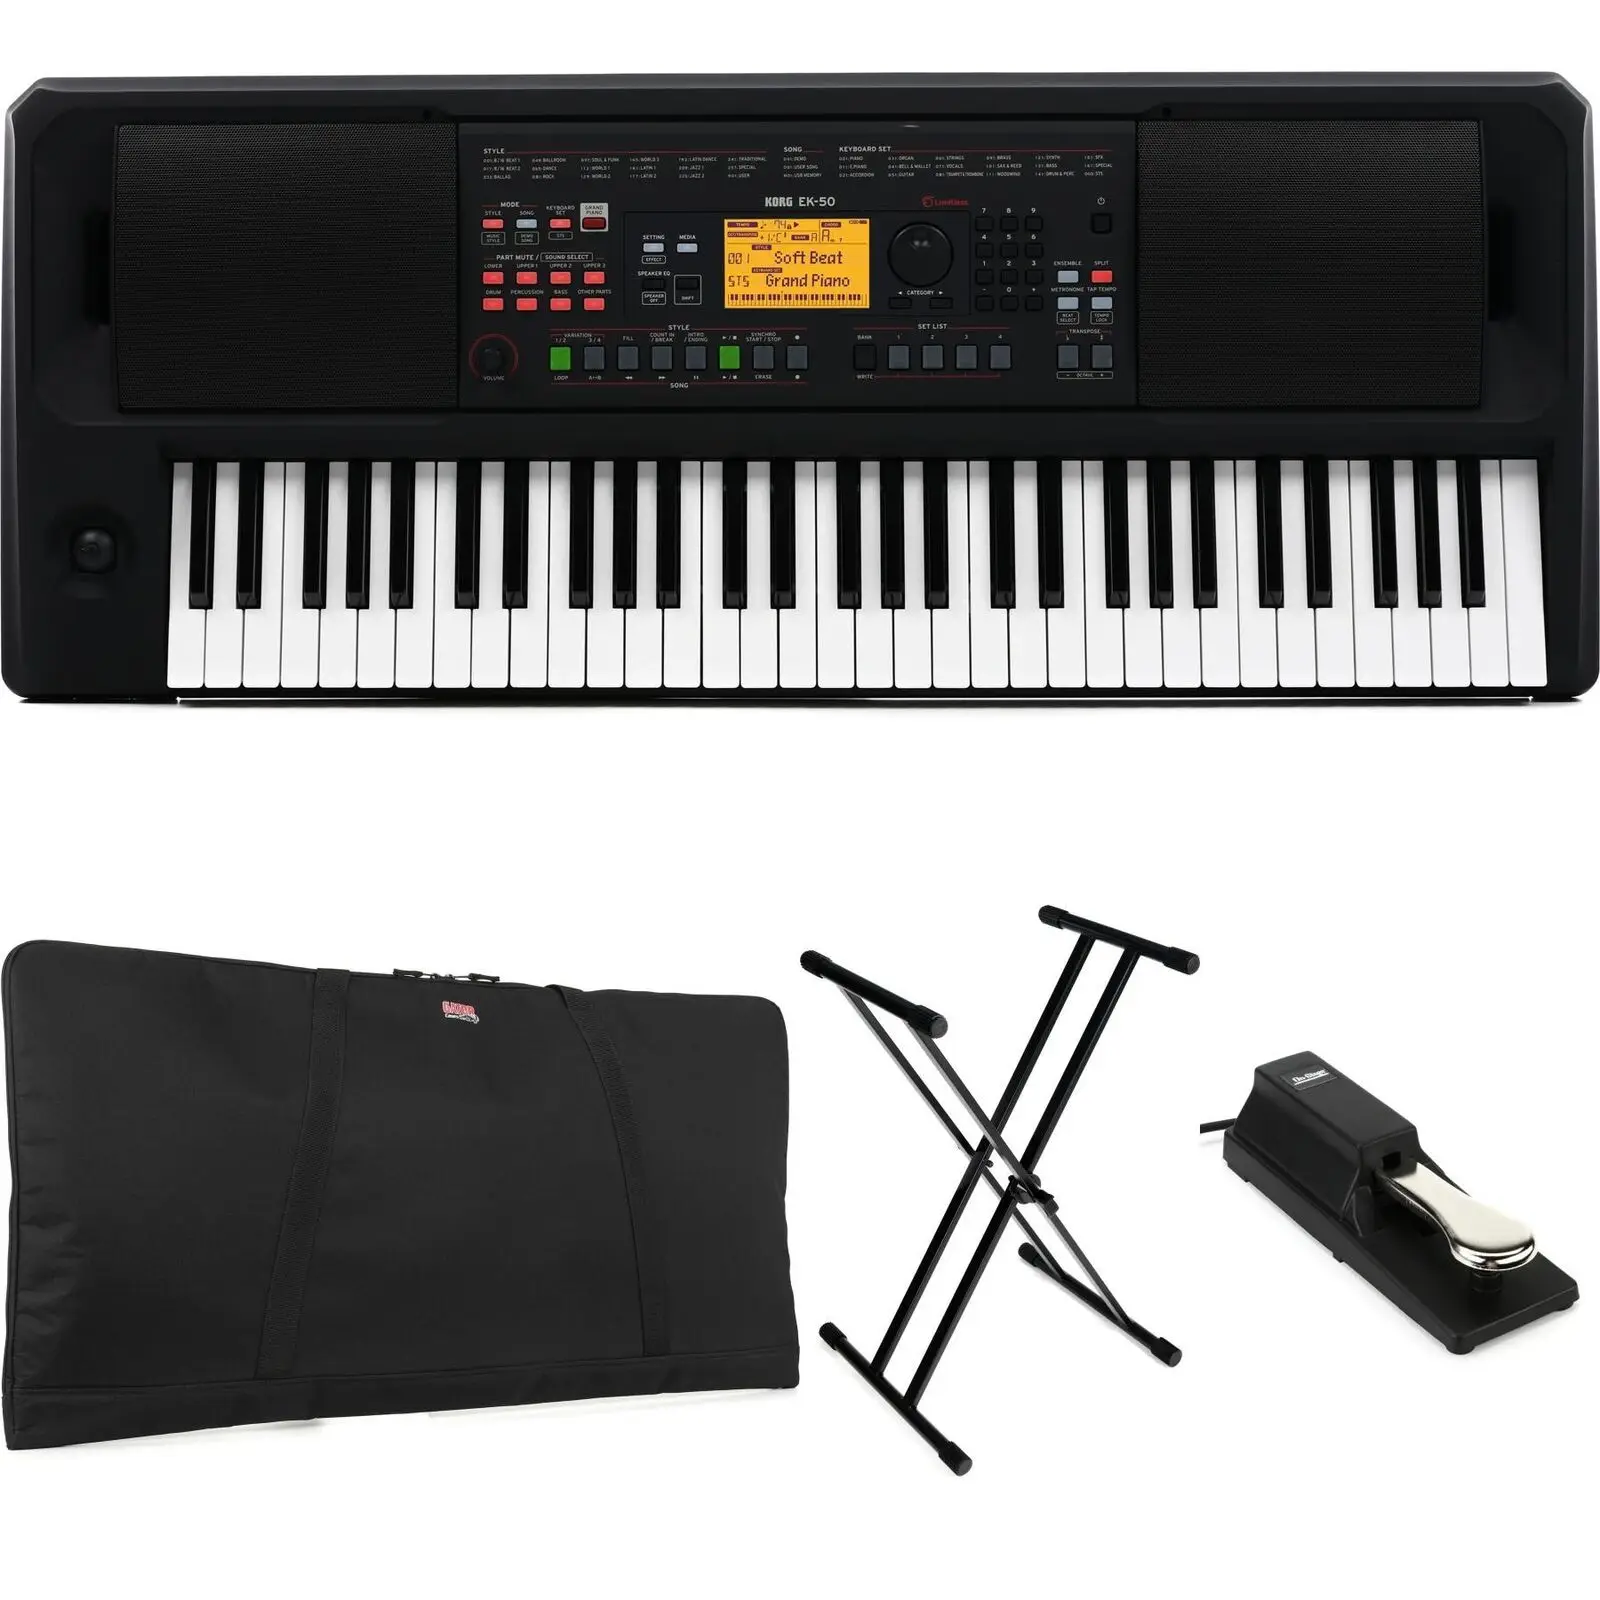 

BRAND NEW ORIGINAL Korg EK-50 L 61-key Arranger Keyboard Stage Bundle